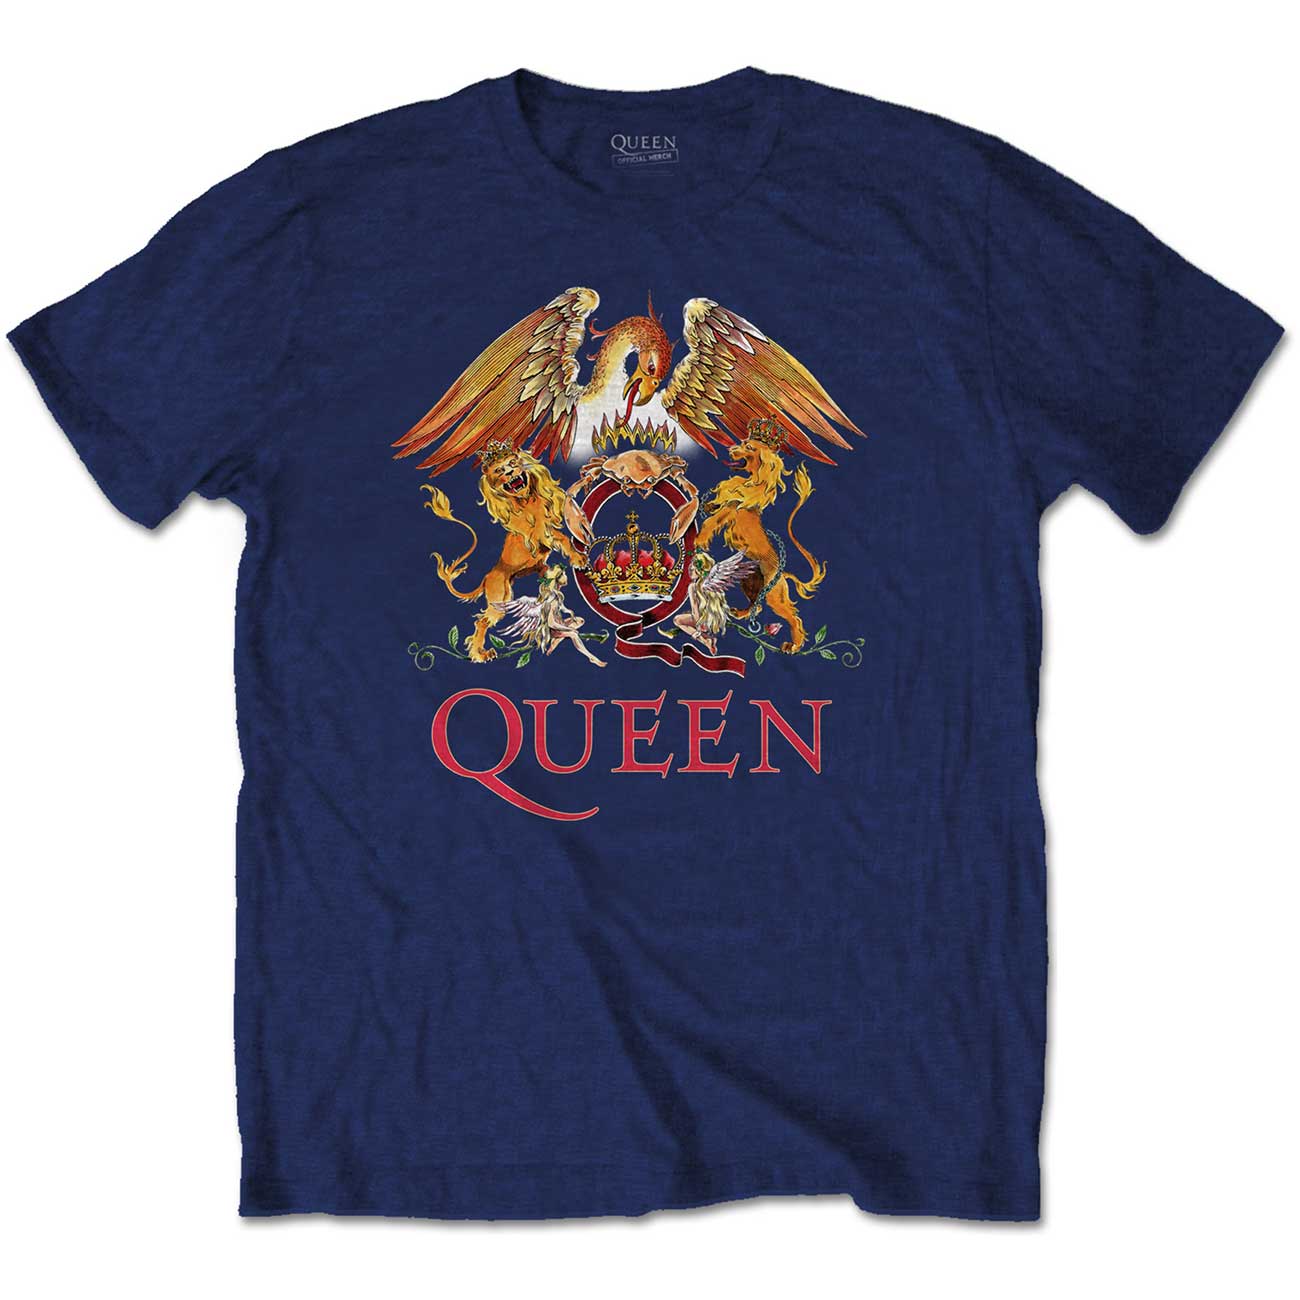 Queen - Classic Crest Navy